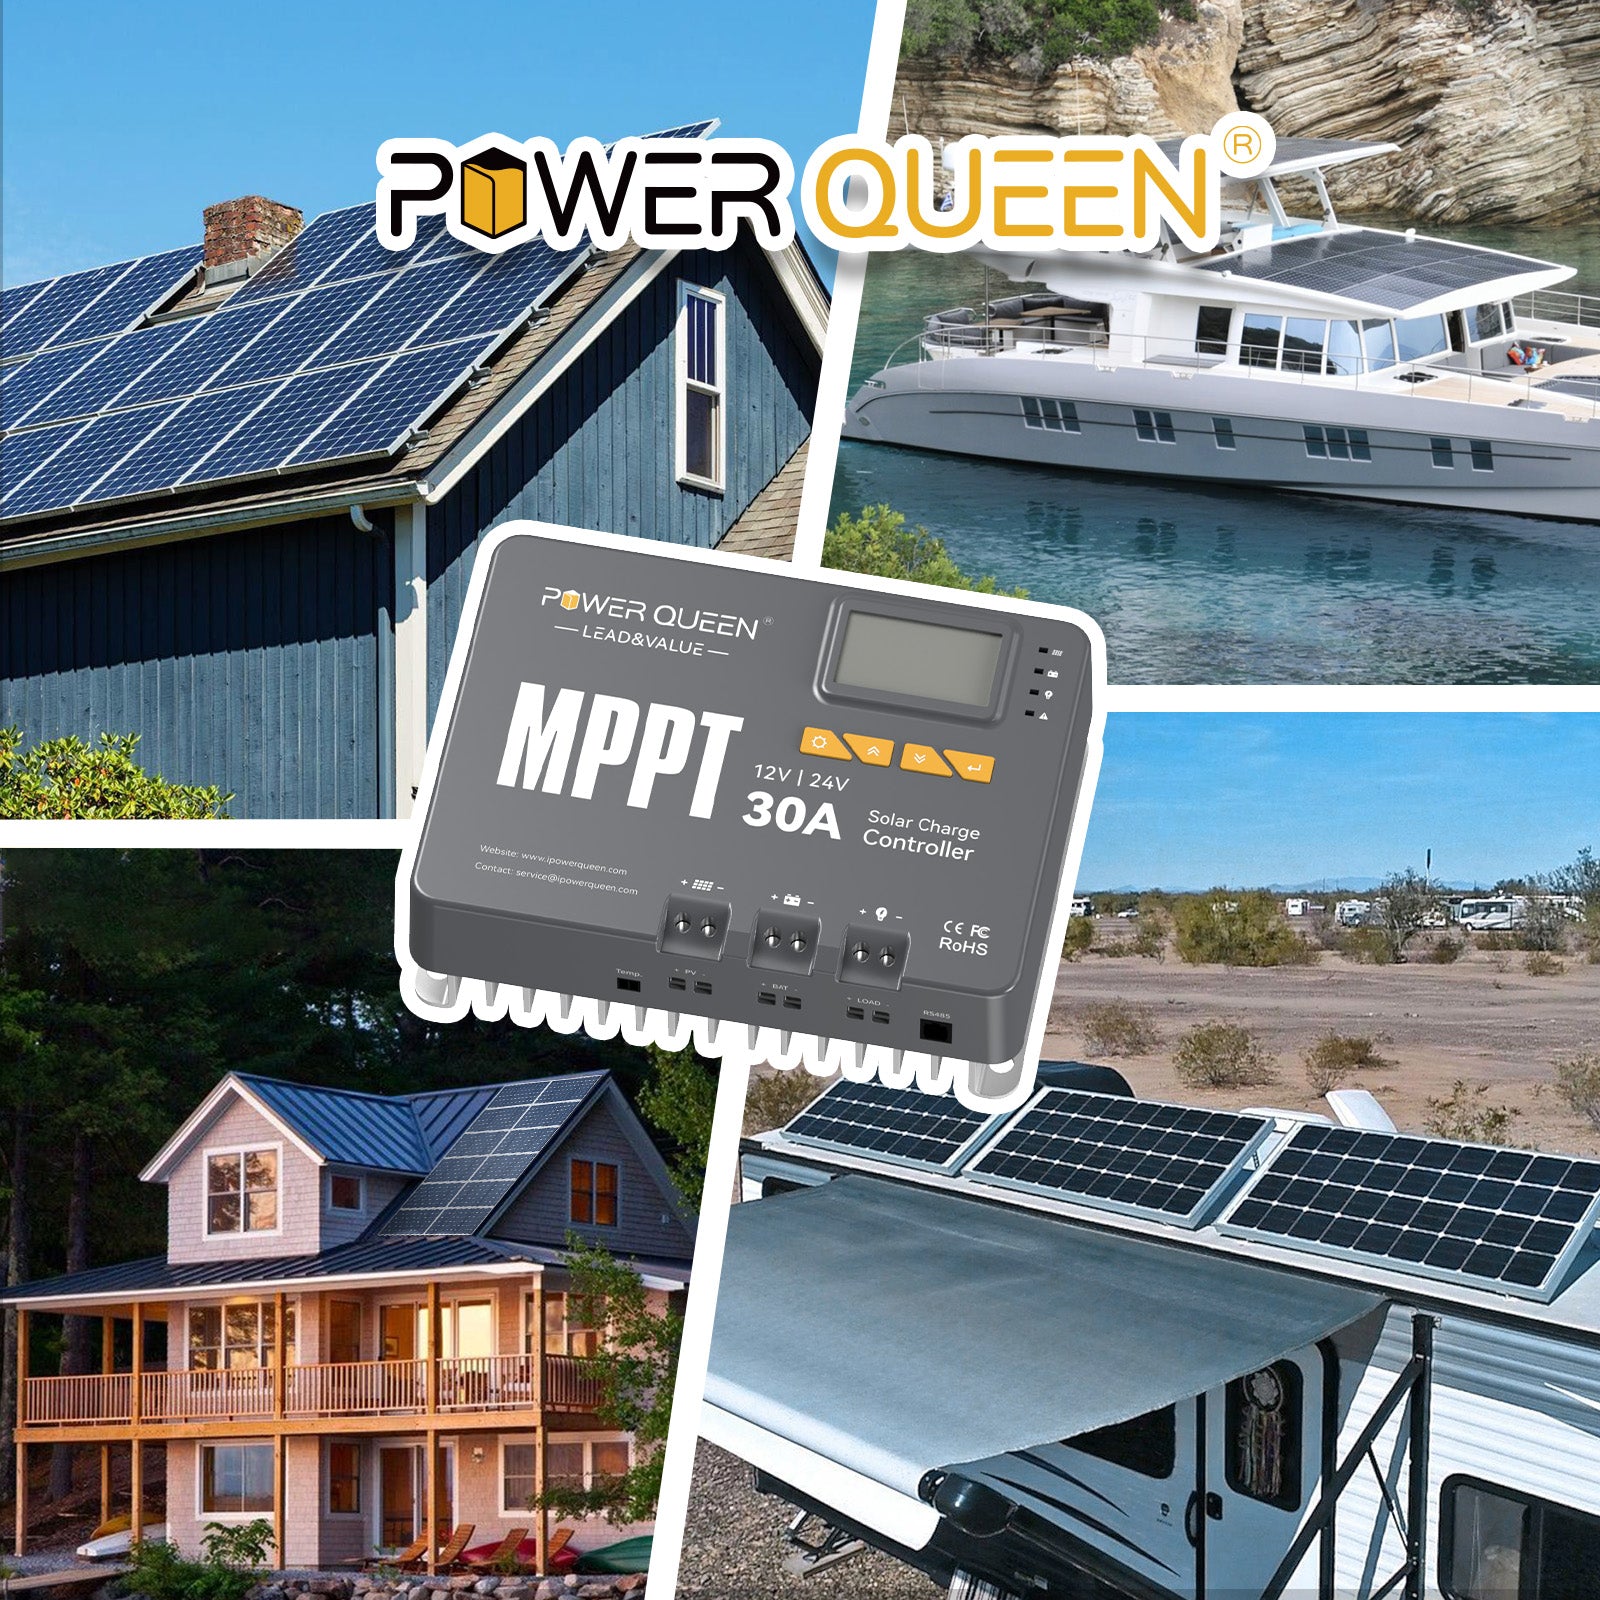 Controlador de carga solar Power Queen MPPT 12/24V 30A con módulo Bluetooth